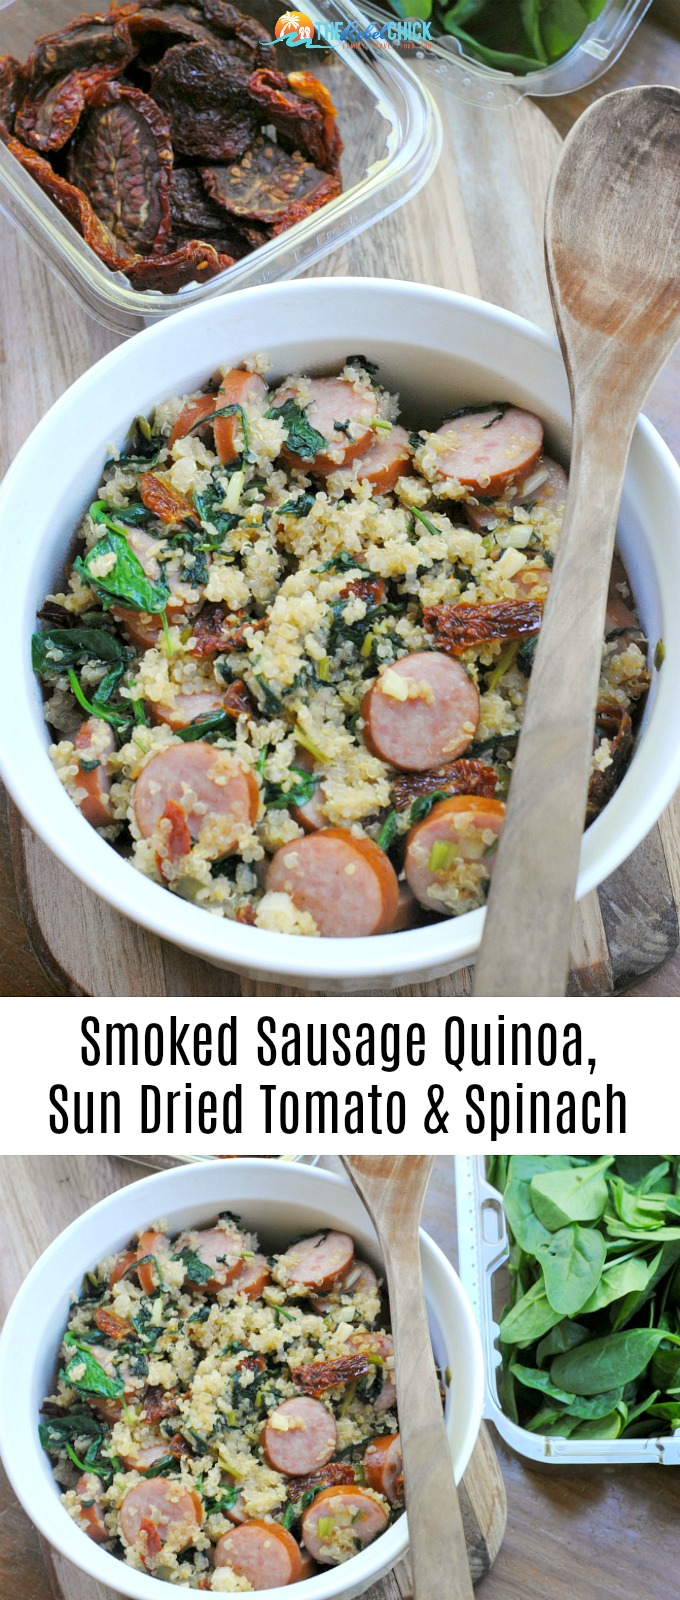 Smoked Sausage Quinoa, Sun dried Tomato & Spinach Recipe